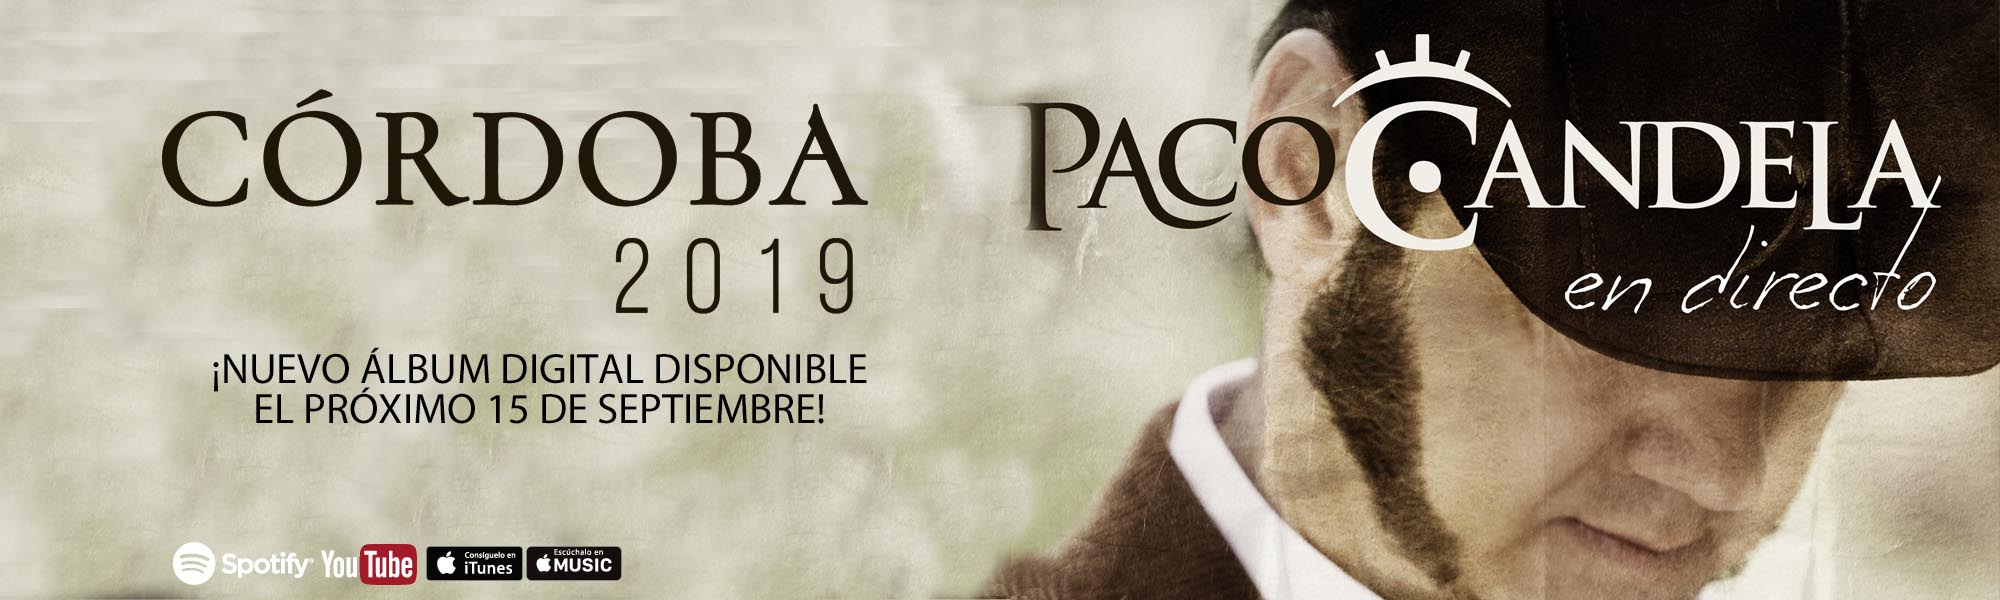 banner-PACO-CANDELA-EN-DIRECTO-CORDOBA-2019-